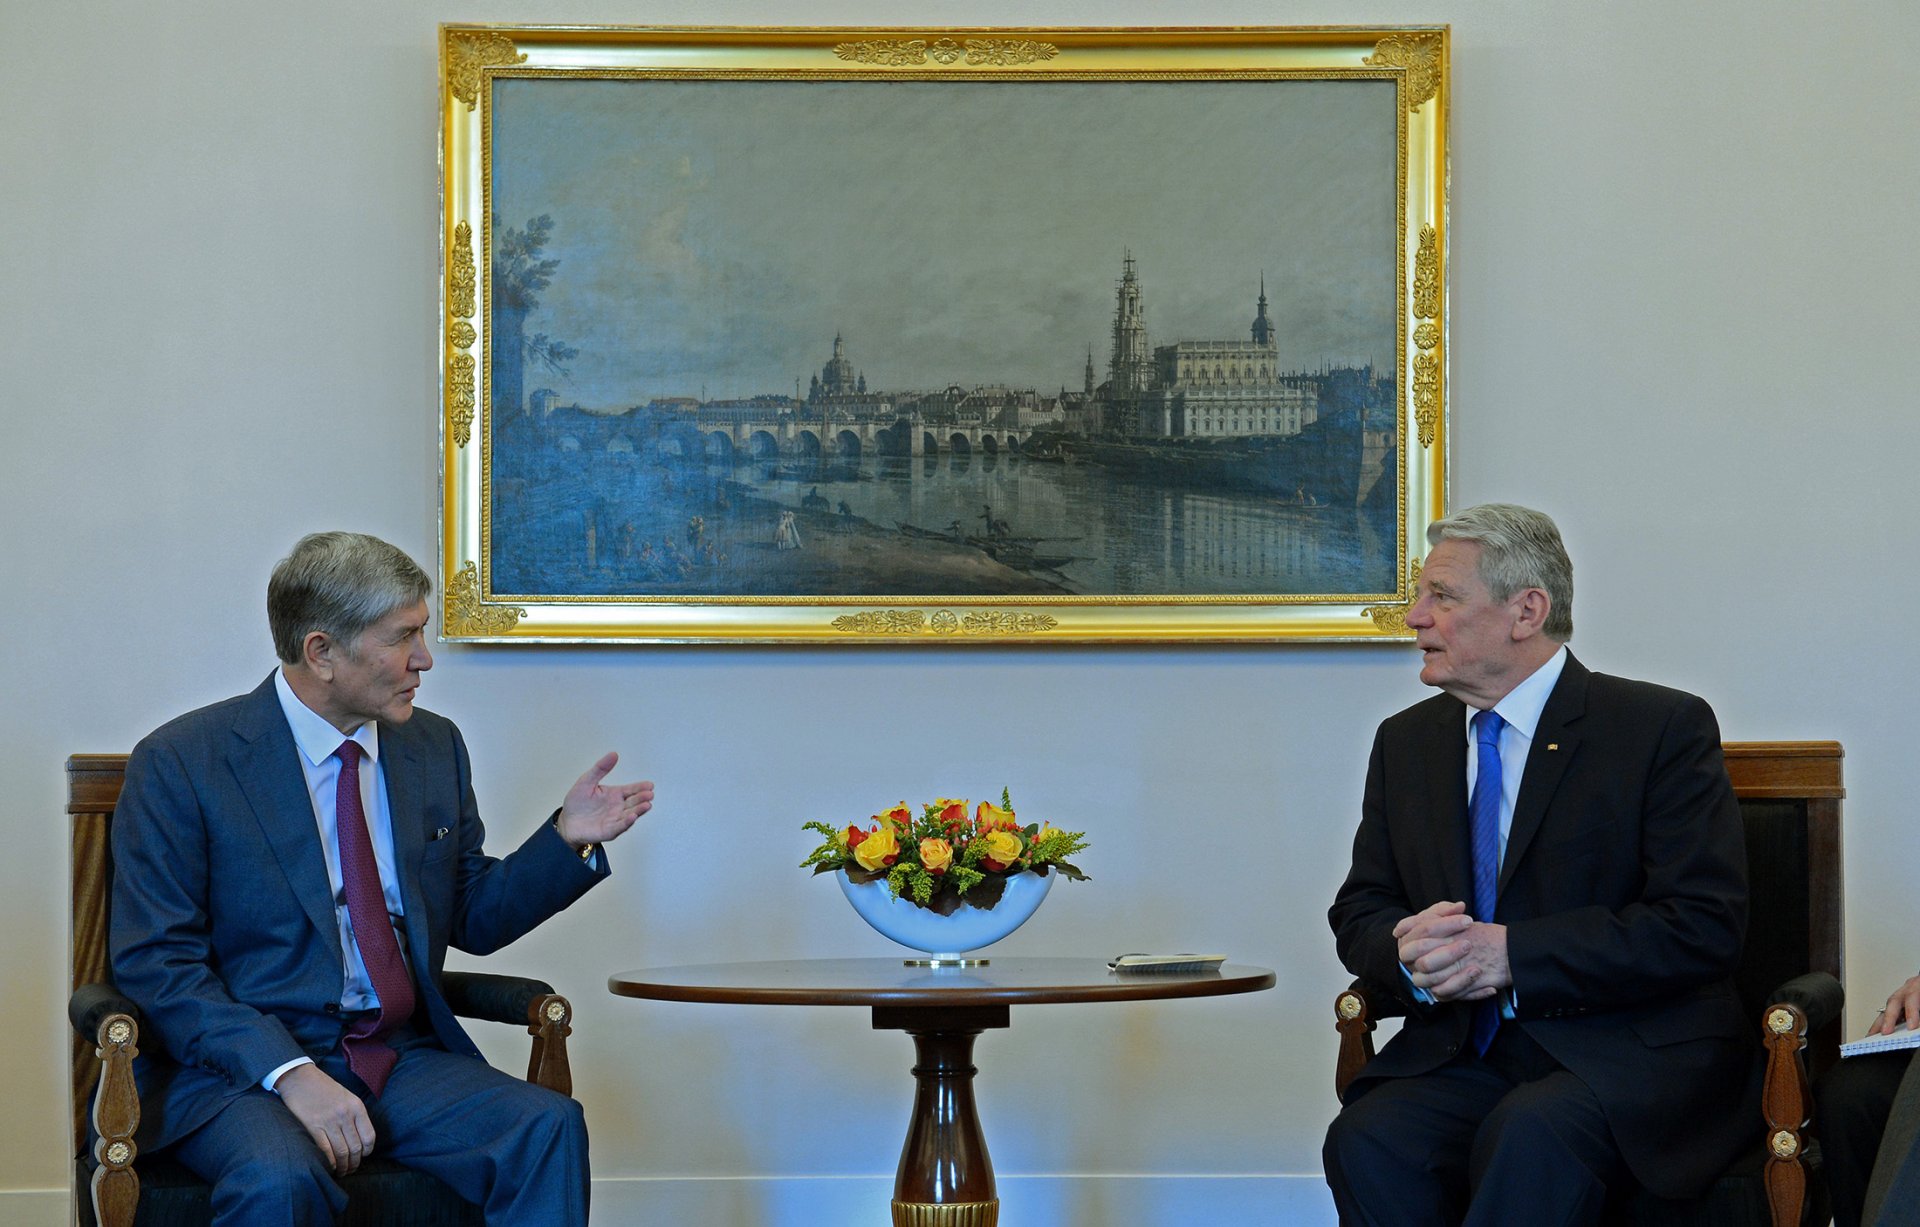 Встреча с федеральным президентом Германии Йоахимом Гауком в рамках официального визита в ФРГ (1 апреля 2015 года, город Берлин)